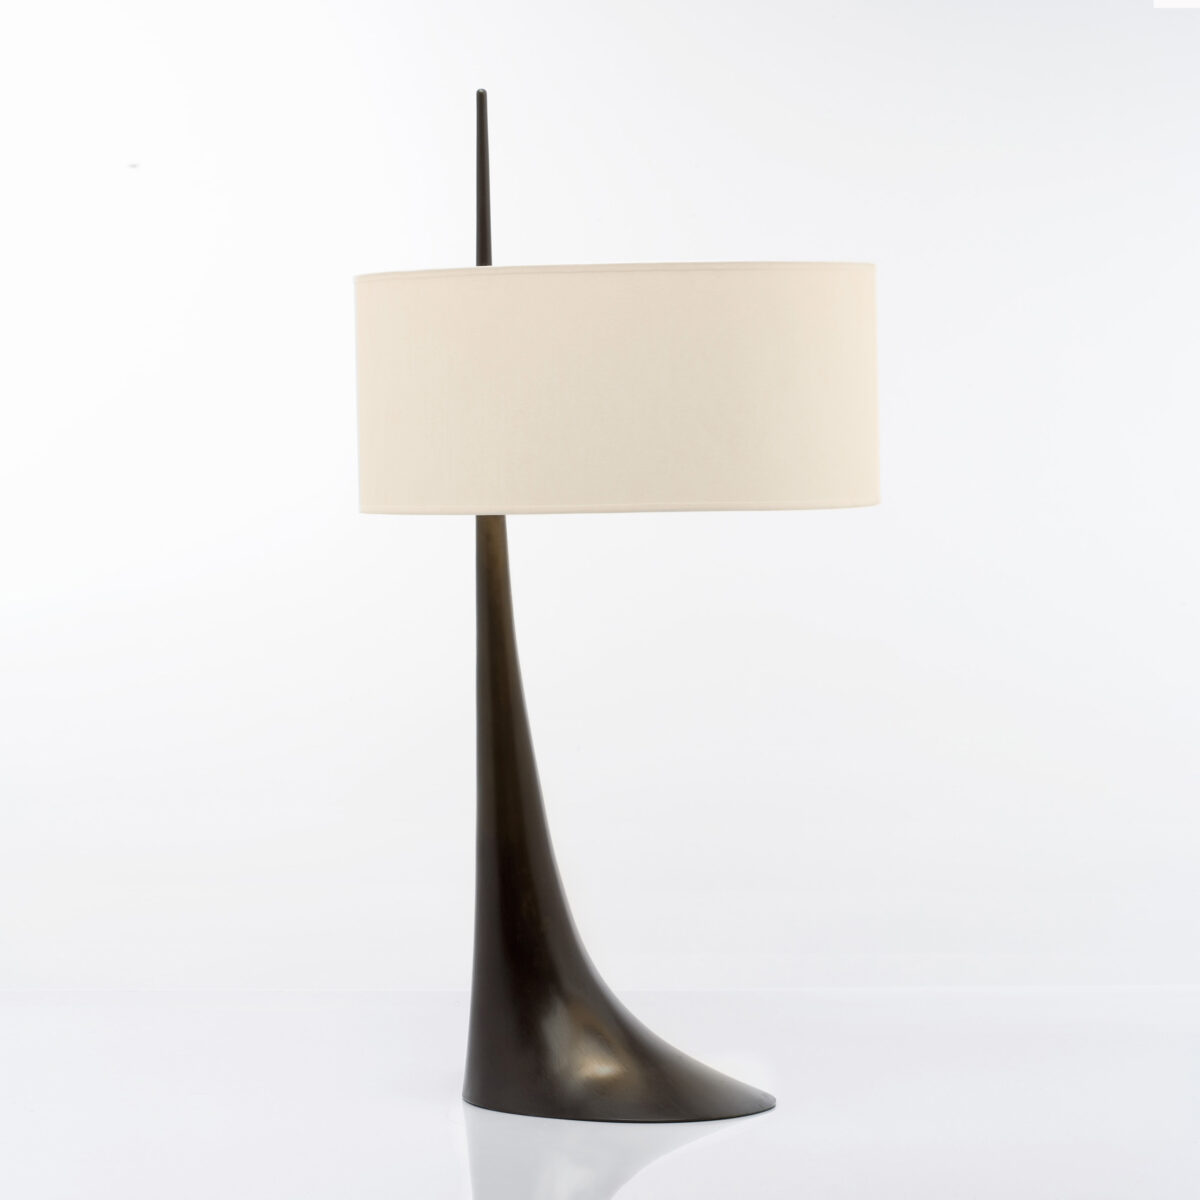 lighting-lampe-elancee-2